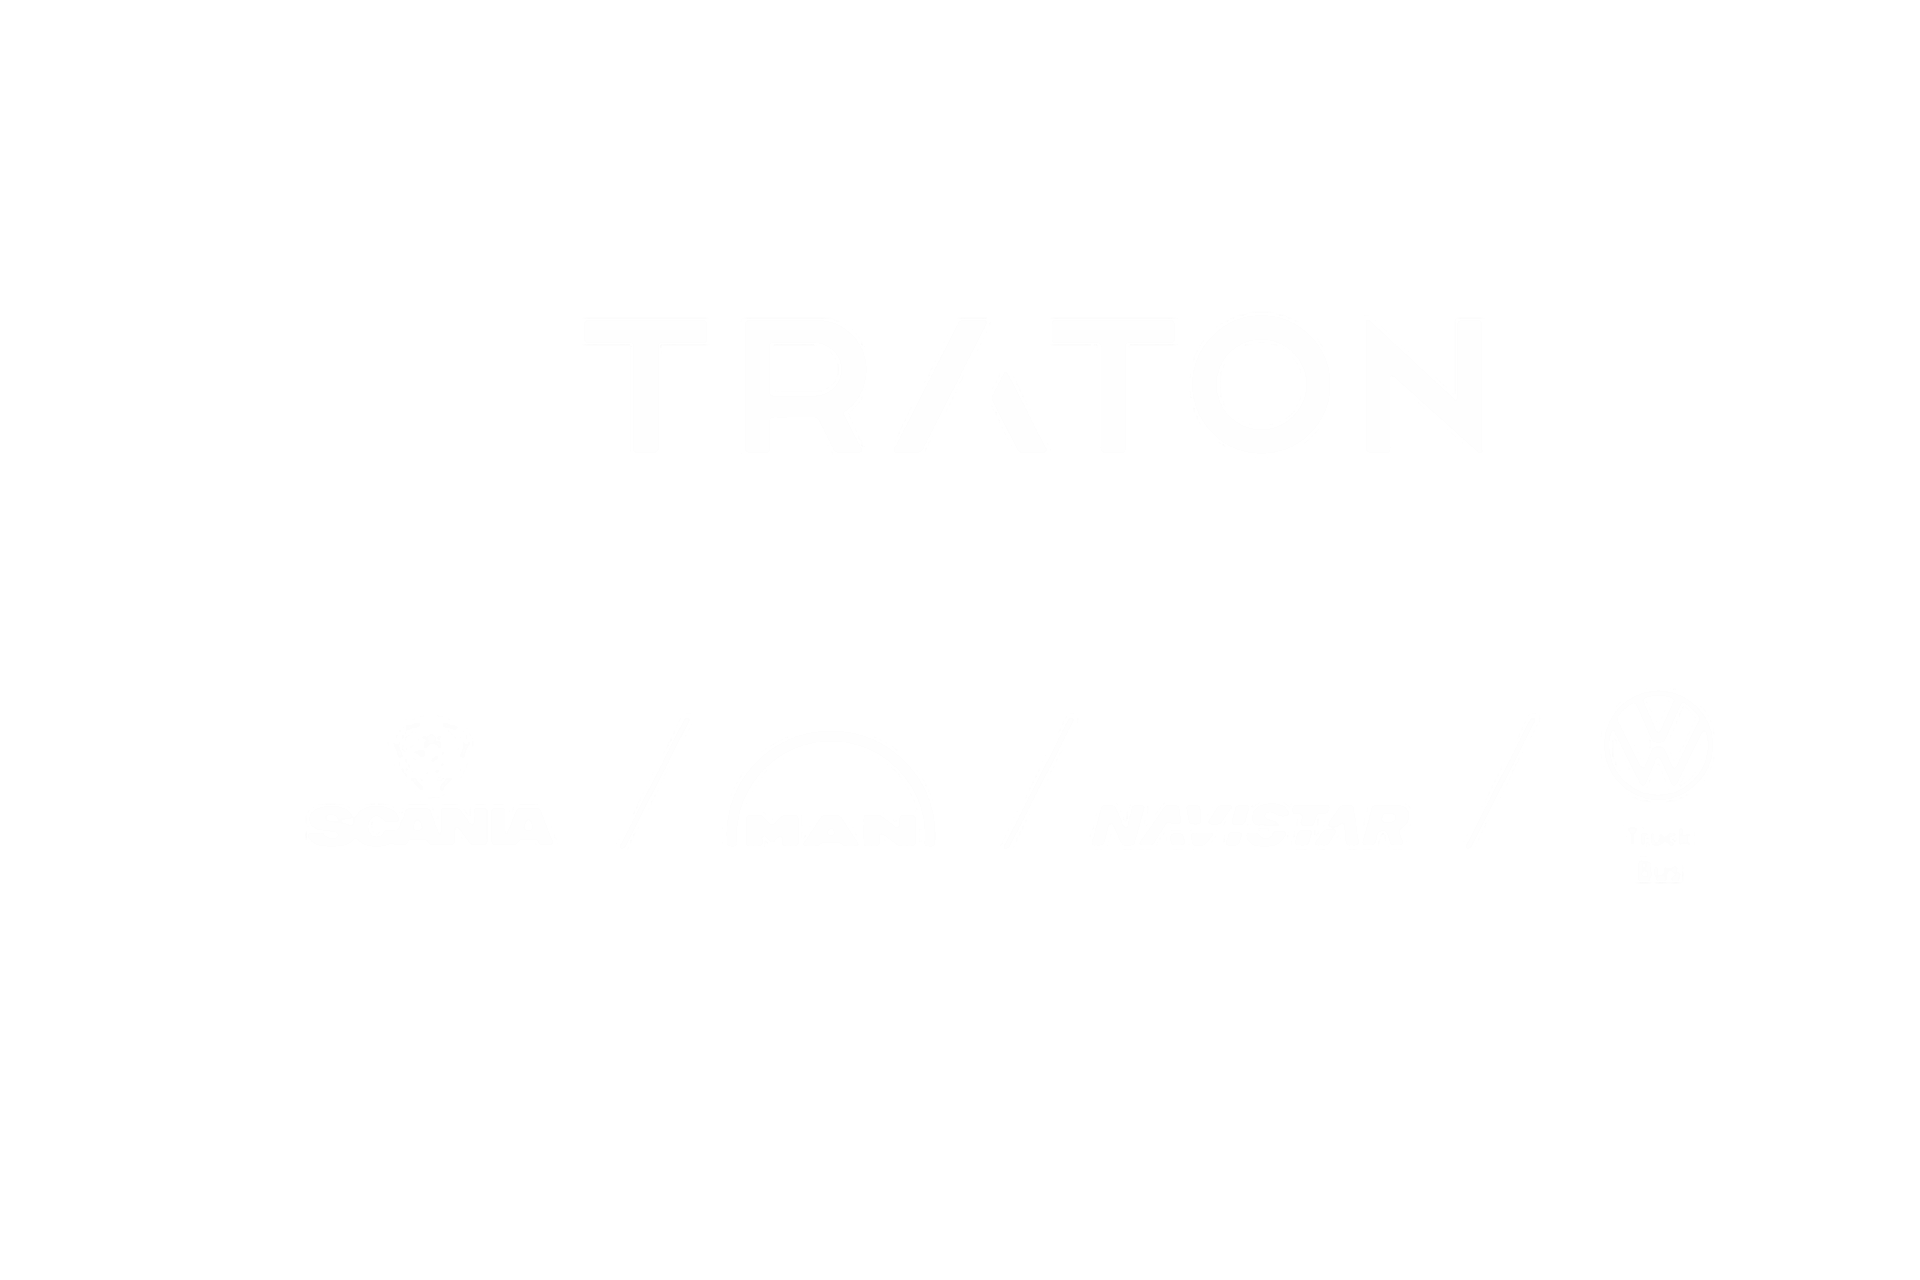 TRATON logo including logos of the brands Scania, MAN, VWCO, Navistar, RIO in white